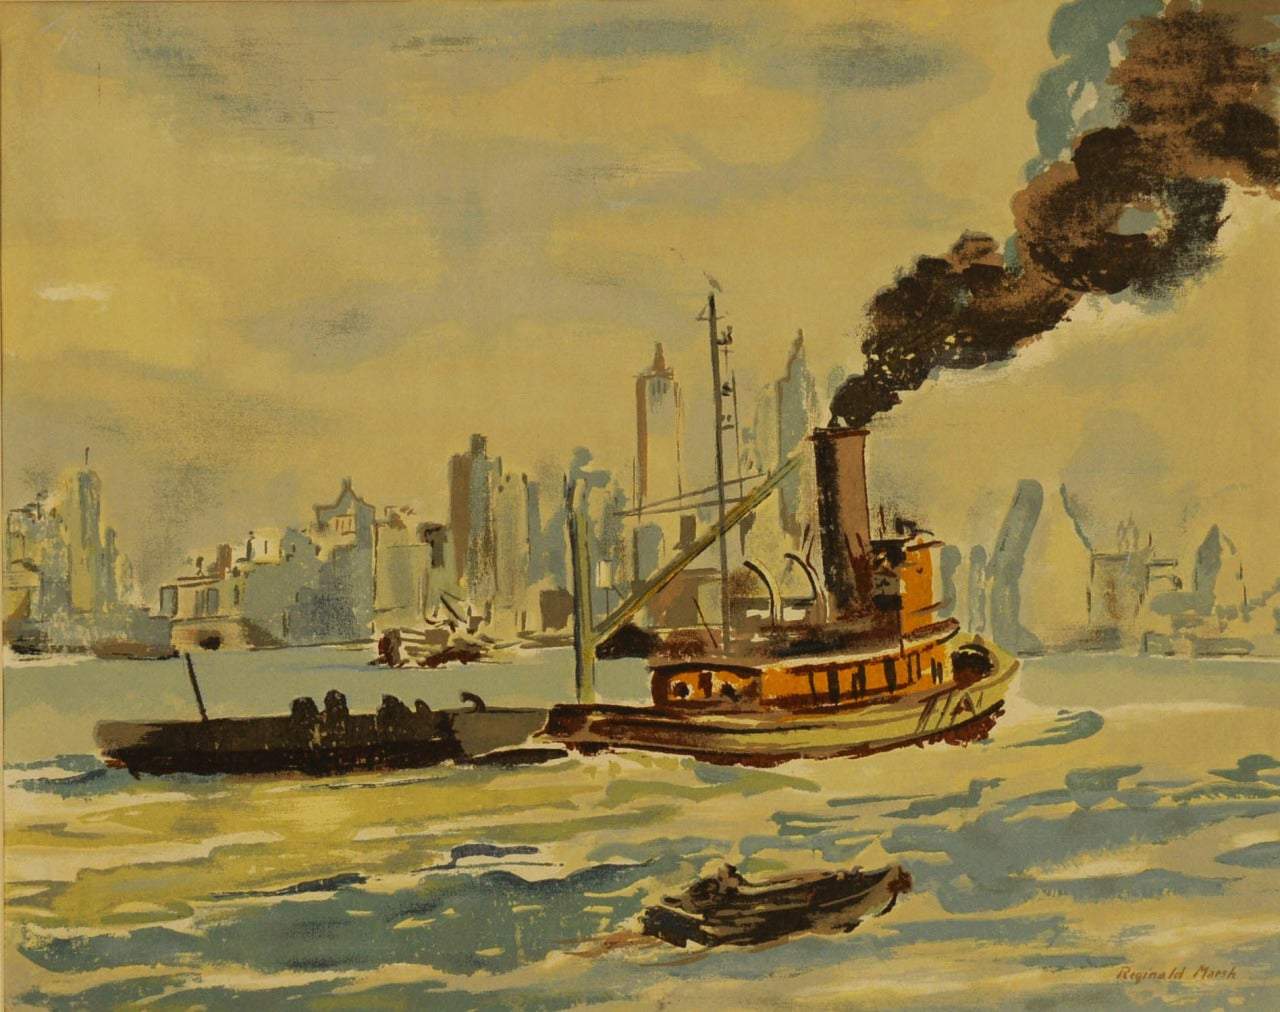 Reginald Marsh Landscape Print - Tug Boat in New York Harbor